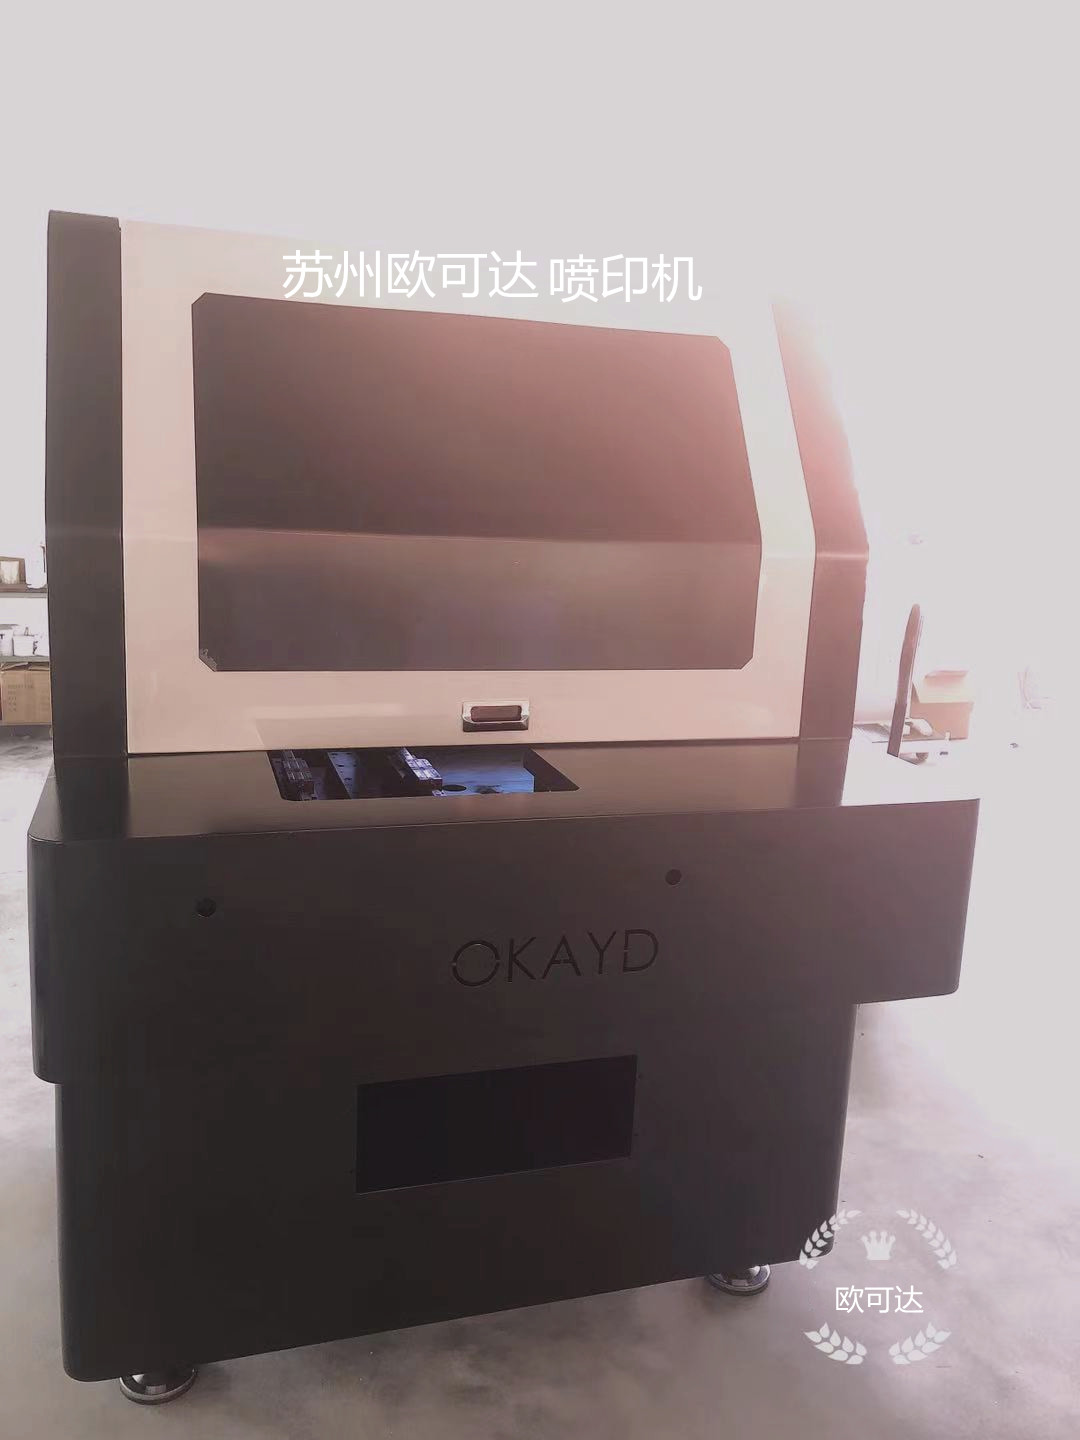 江苏高精度UV喷印机厂家苏州欧可达全自动喷印机厂家质量放心可靠